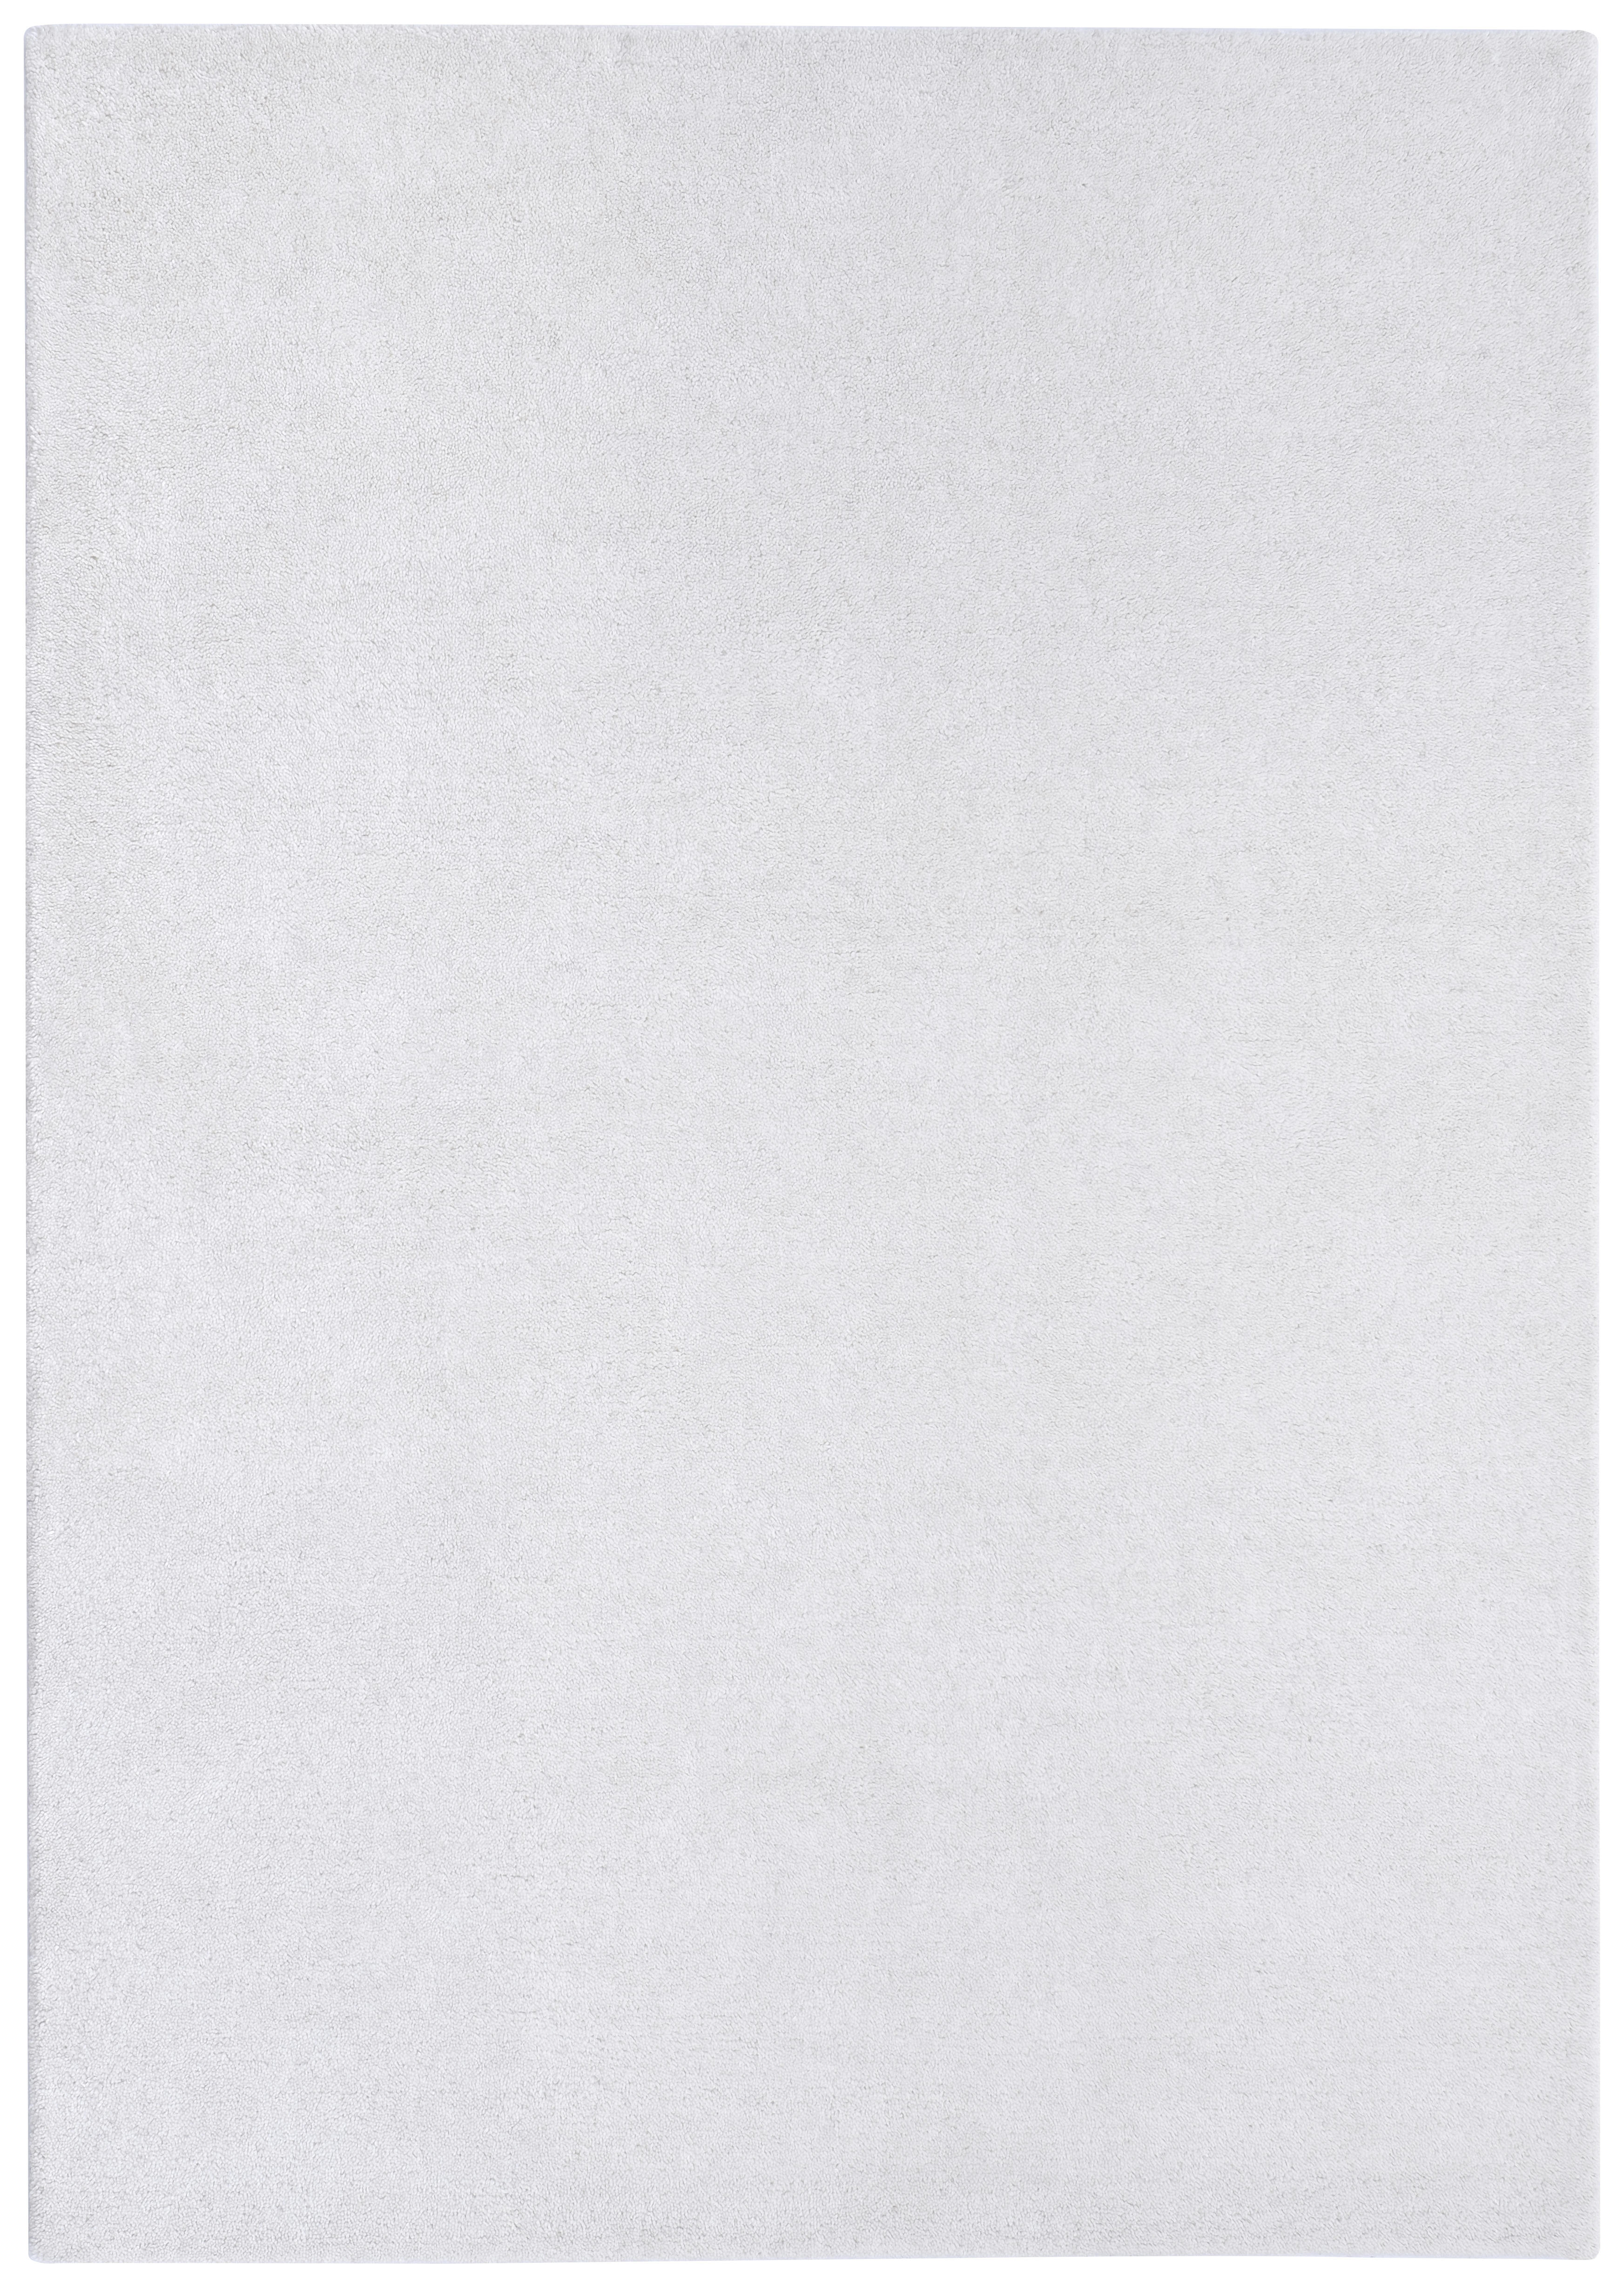 WOLLTEPPICH - Weiß, Design, Textil (70/140cm) - Linea Natura